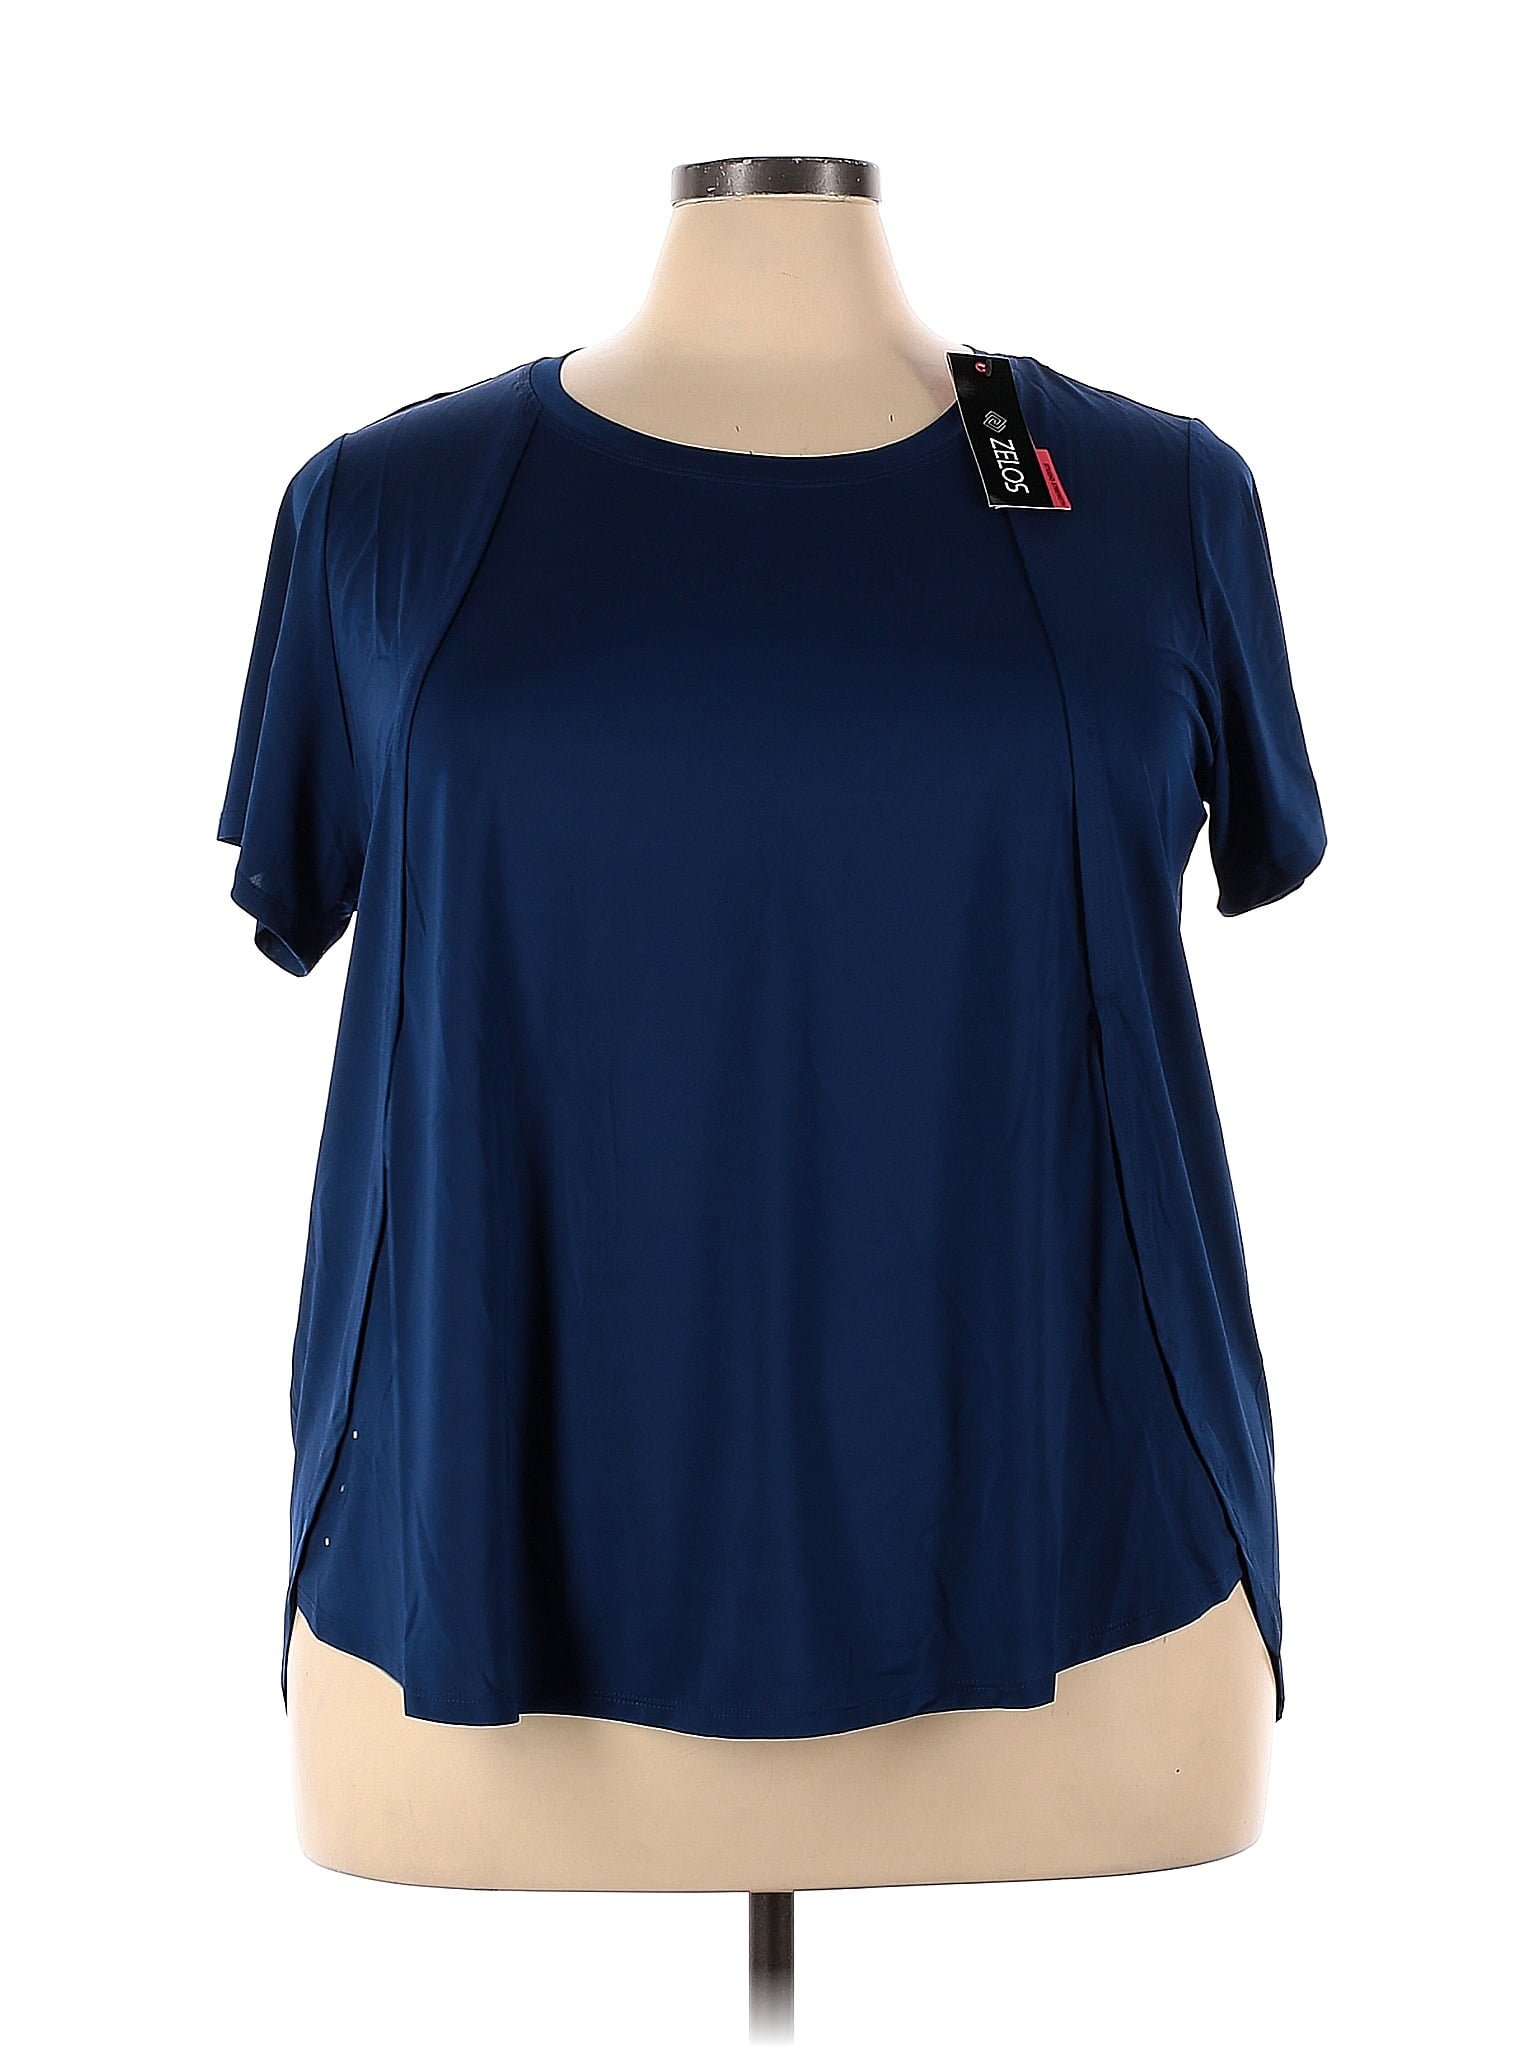 Zelos Blue Active T-Shirt Size 3X (Plus) - 61% off